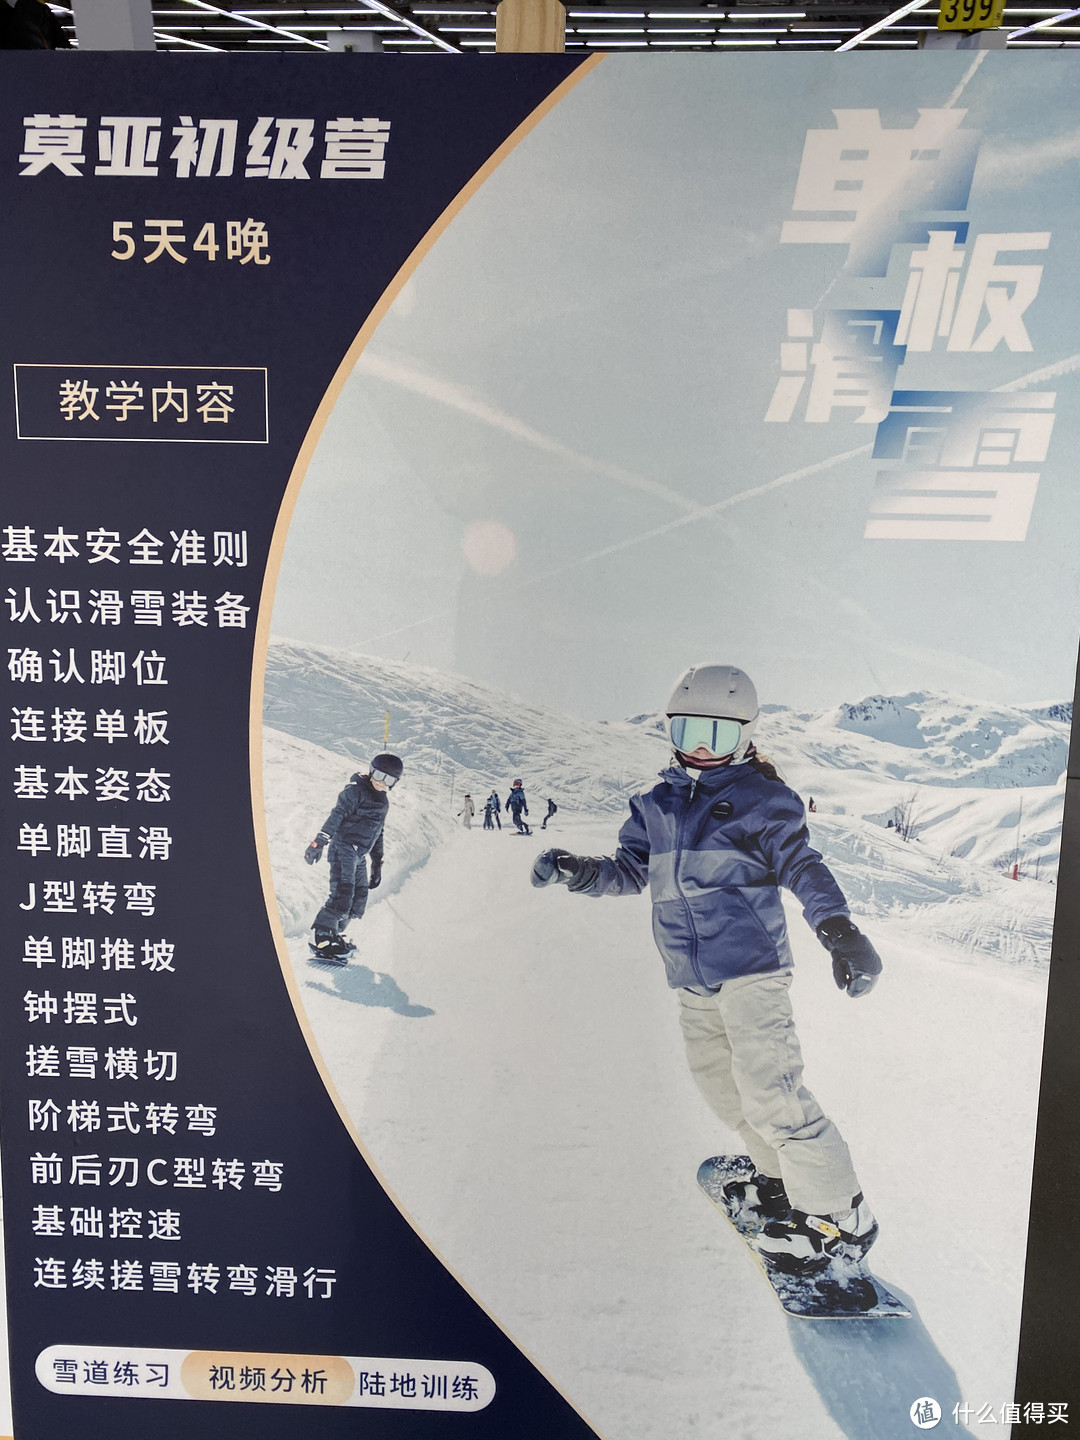 体验滑雪运动的同时，也要保护好自己——迪卡侬滑雪装备护具一览